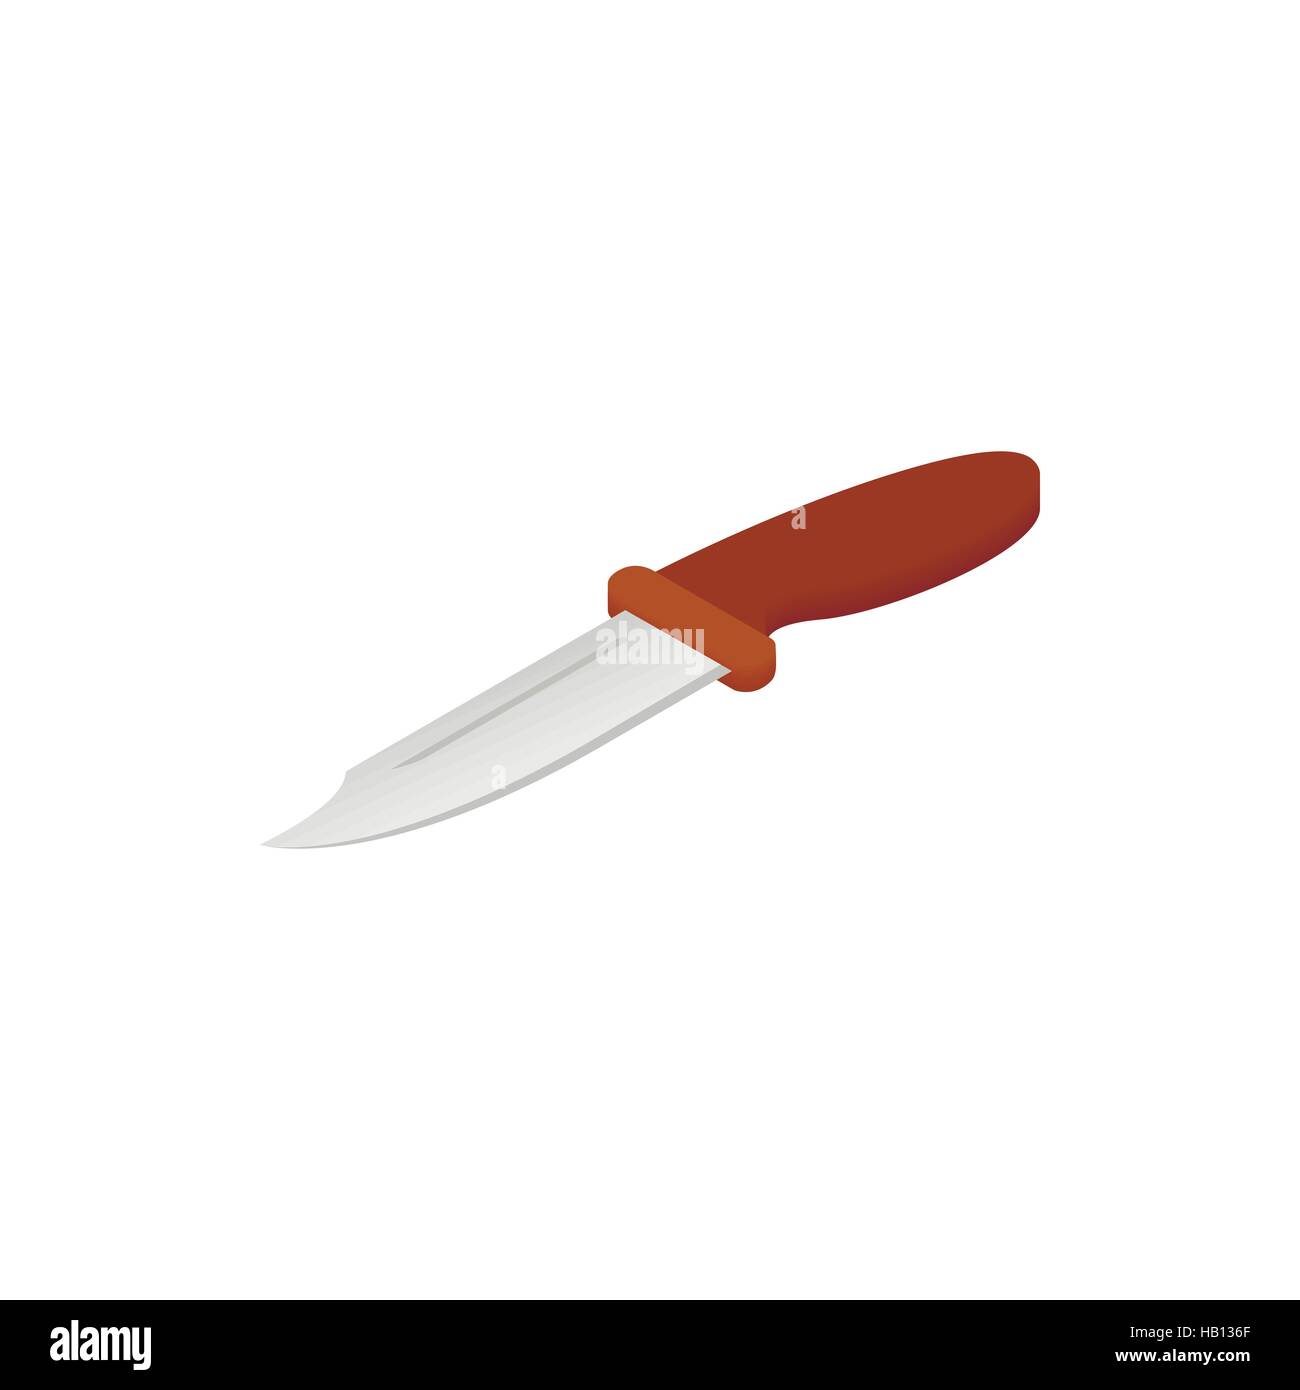 Ninja weapon kunai throwing knife isometric icon Stock Vector Image & Art -  Alamy